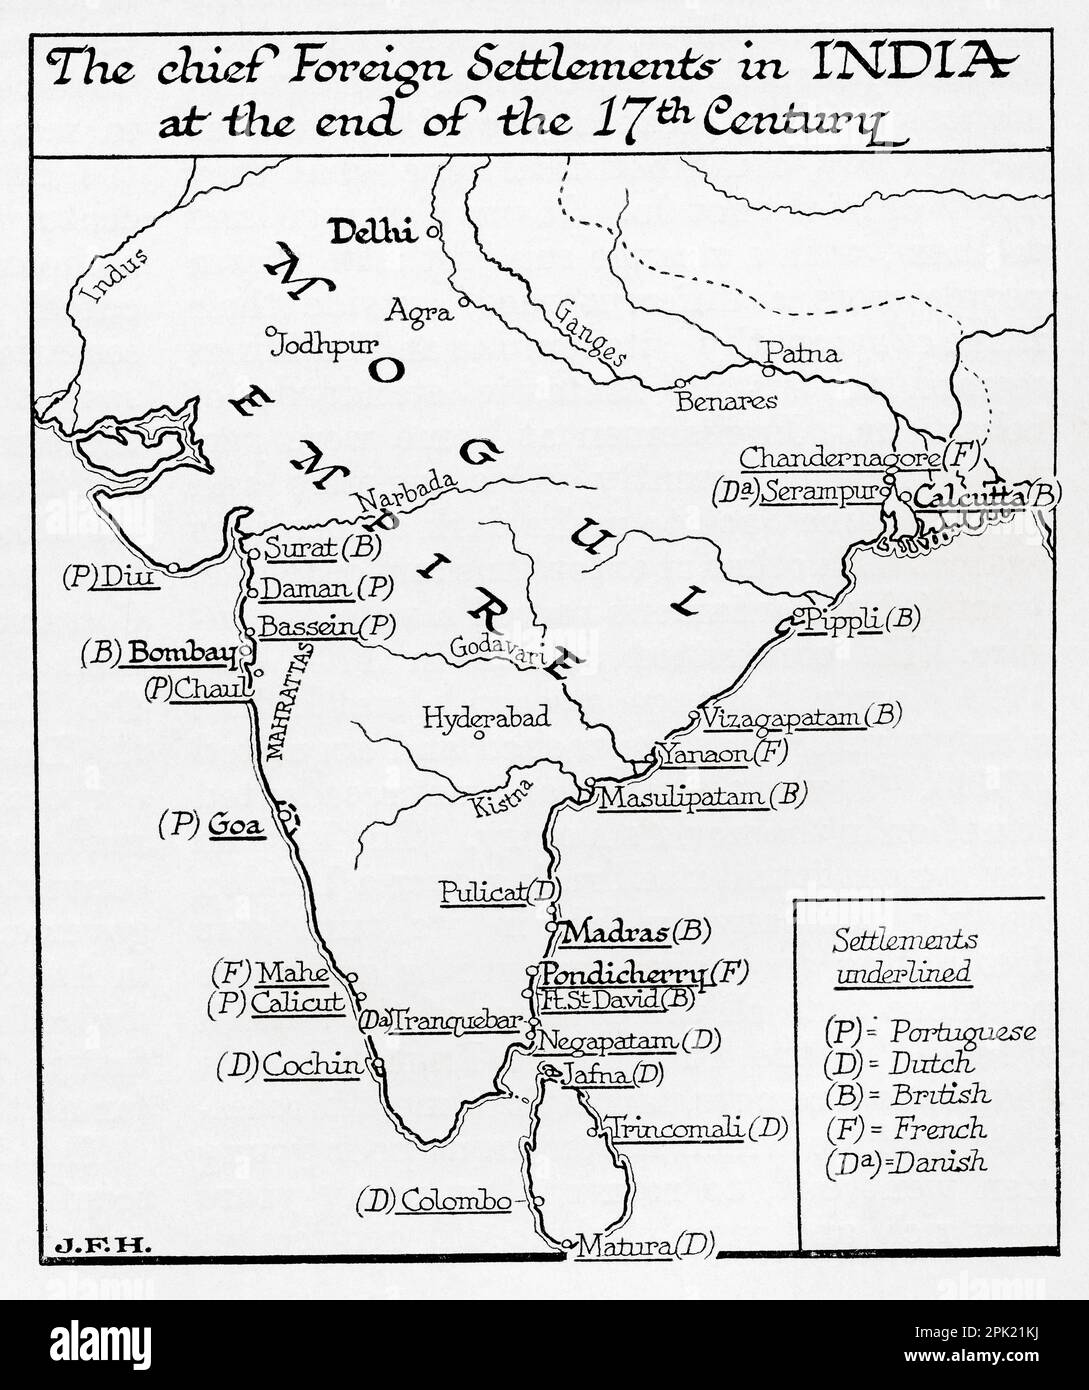 Karte der wichtigsten ausländischen Siedlungen in Indien am Ende des 17. Jahrhunderts. Aus dem Buch Outline of History von H.G. Wells, veröffentlicht 1920. Stockfoto